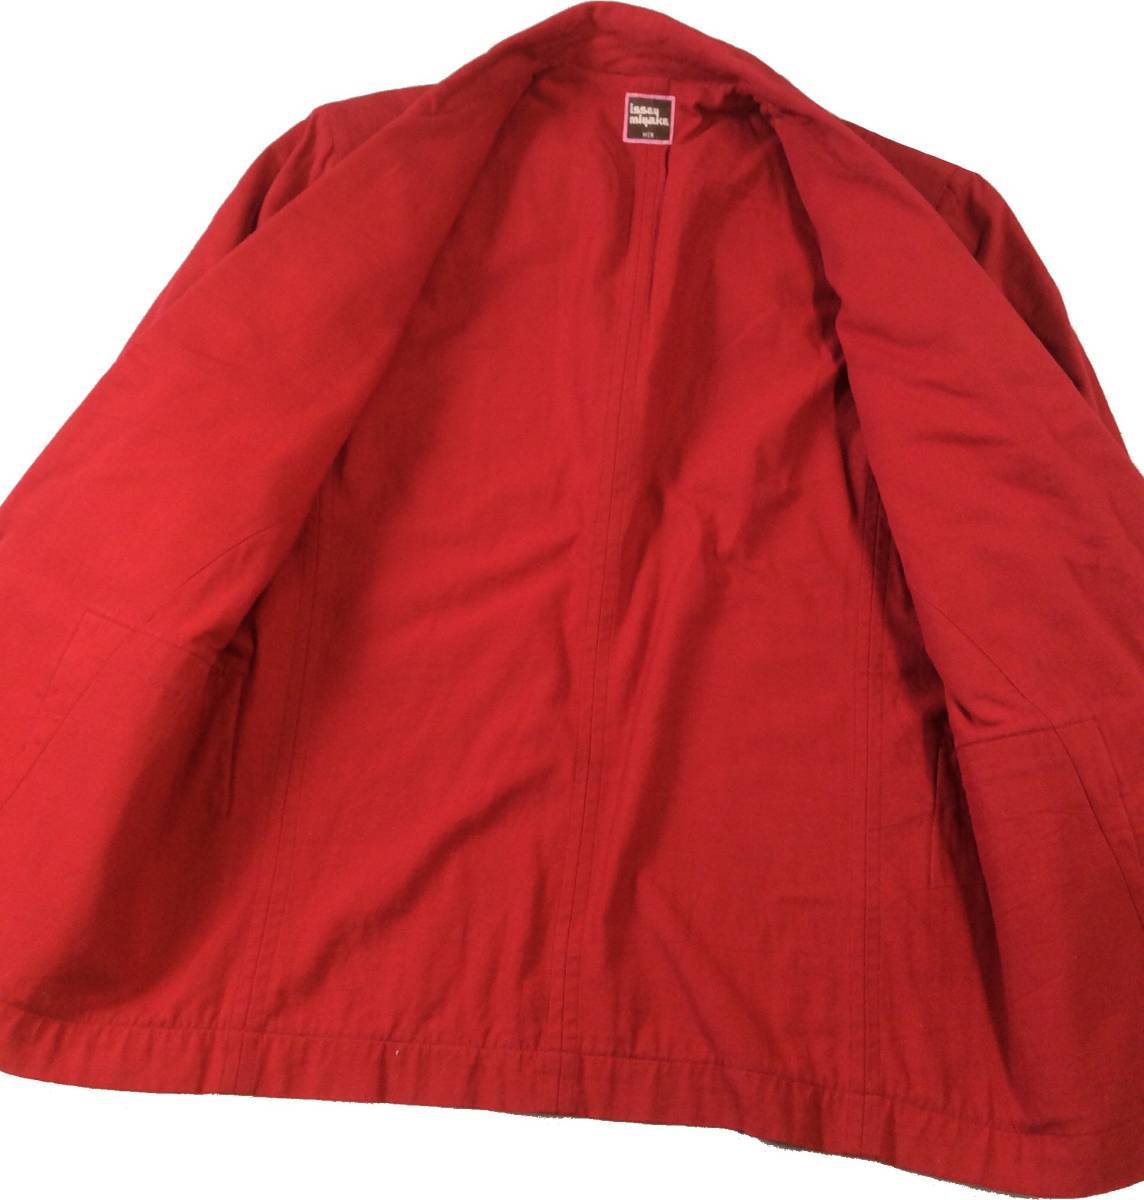 イッセイミヤケメン ISSEY MIYAKE MEN 70s コットン デザインジャケット テーラードジャケット 赤 ヴィンテージ M_画像7